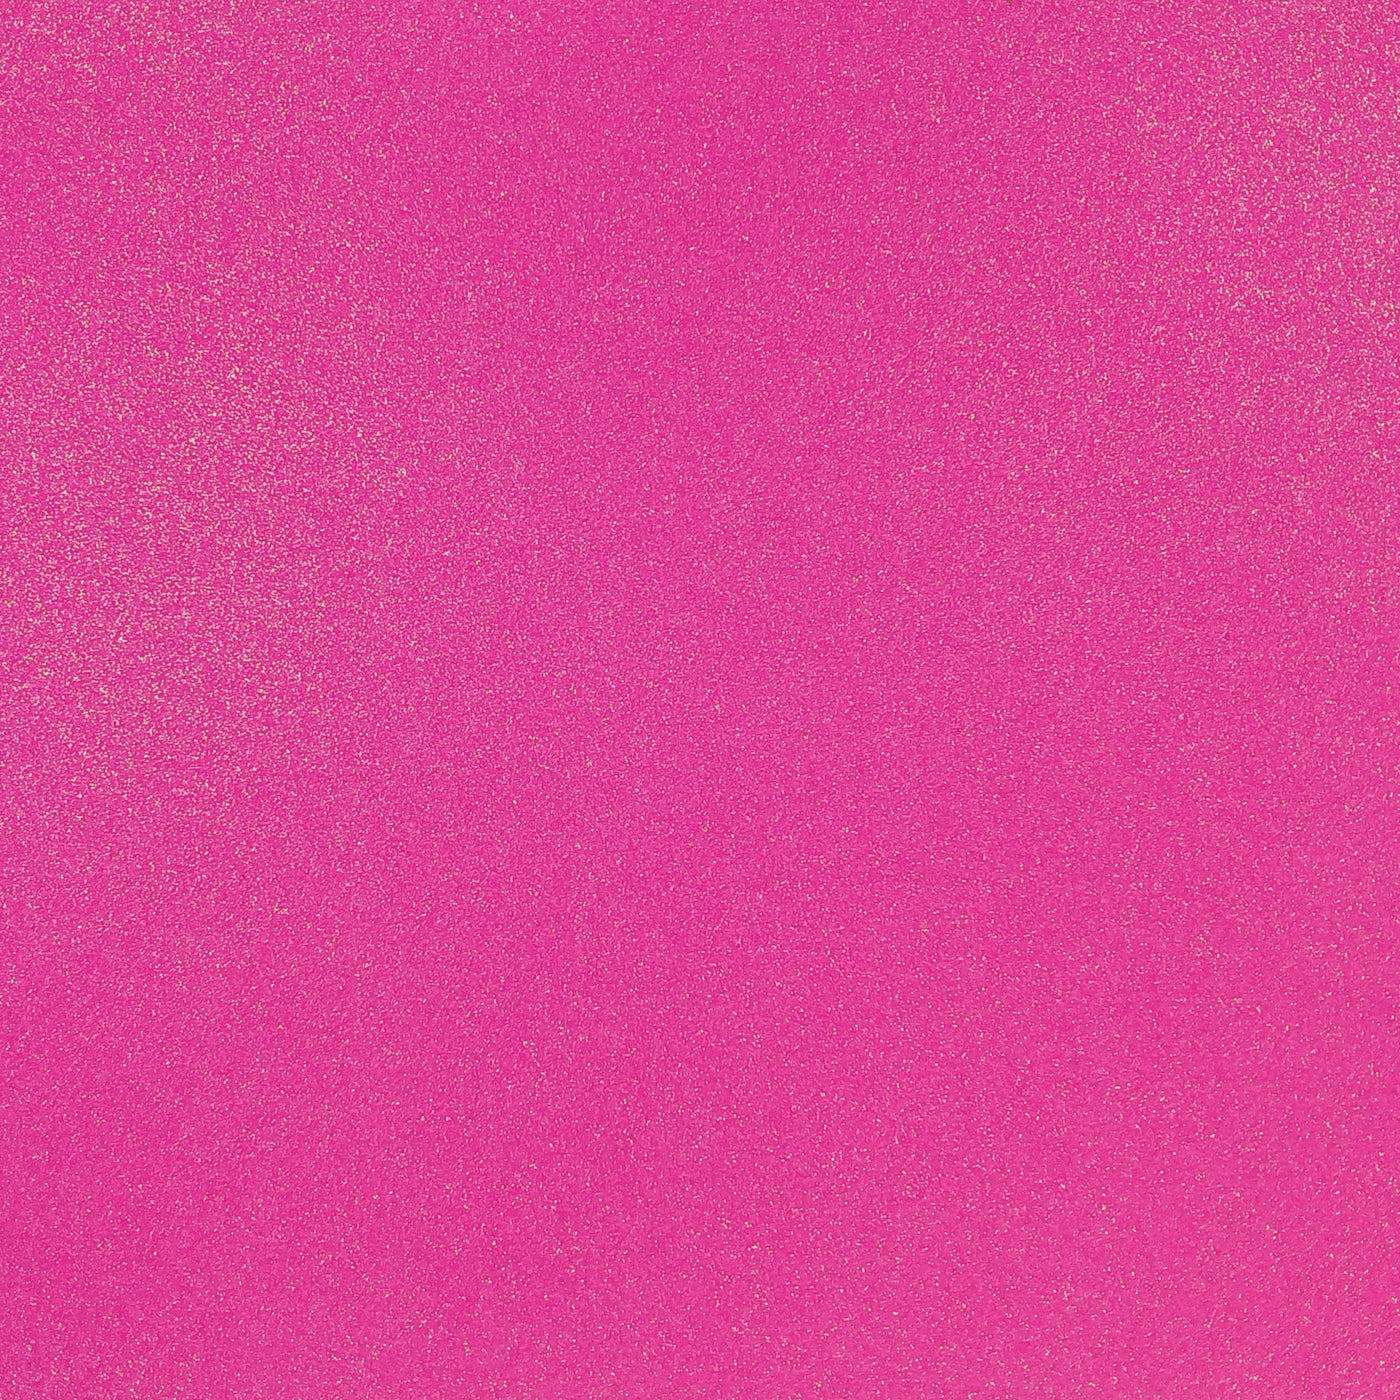 Neon Pink Glitter Luxe Cardstock